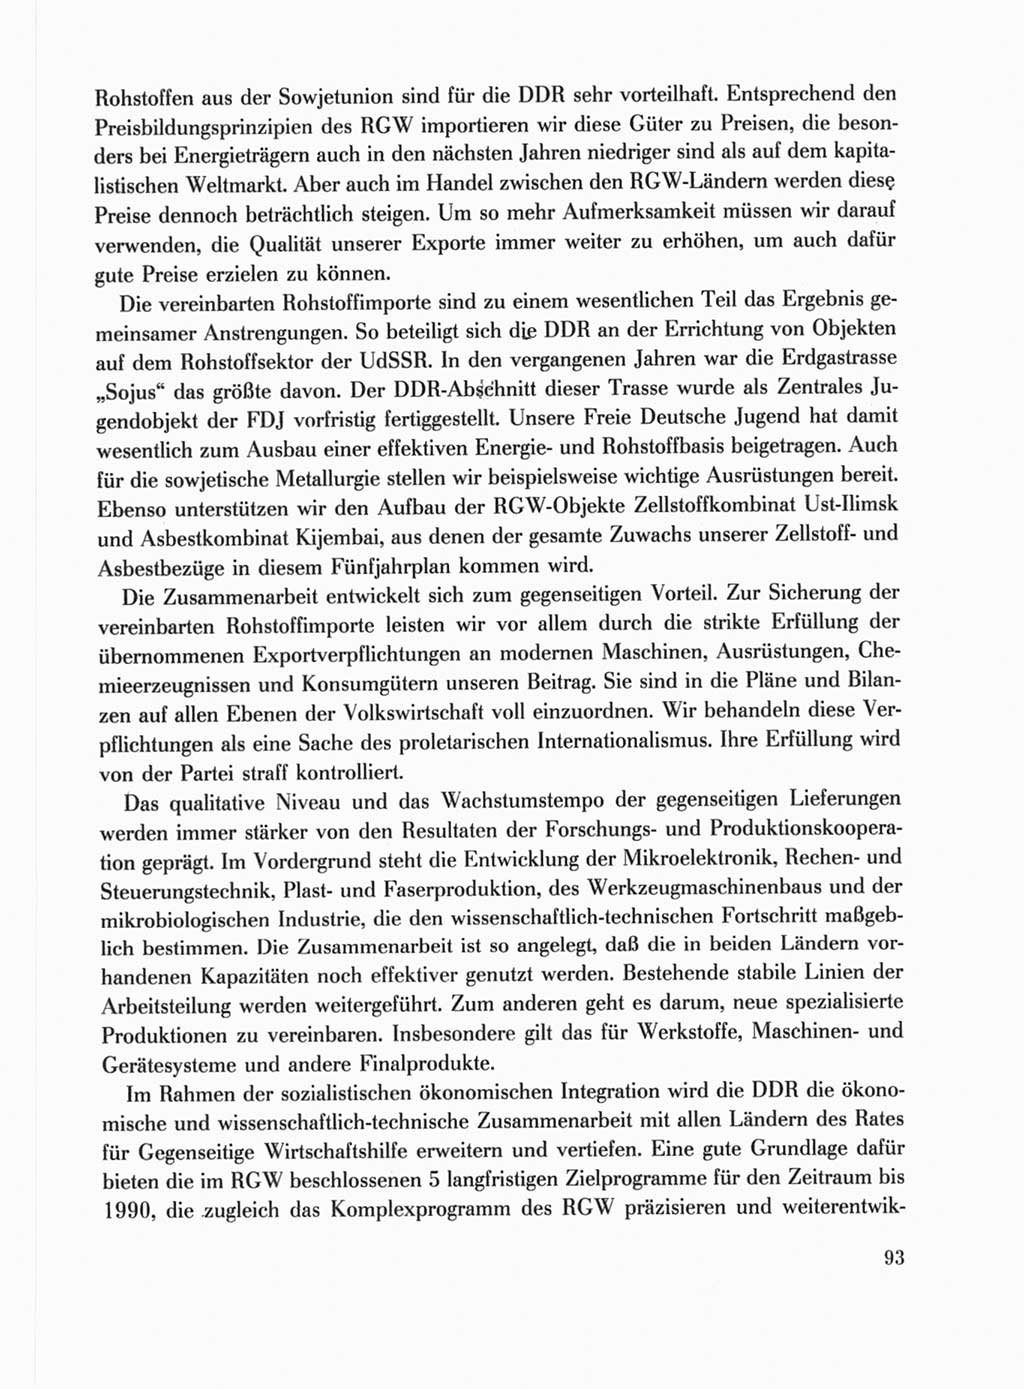 Protokoll der Verhandlungen des Ⅹ. Parteitages der Sozialistischen Einheitspartei Deutschlands (SED) [Deutsche Demokratische Republik (DDR)] 1981, Band 1, Seite 93 (Prot. Verh. Ⅹ. PT SED DDR 1981, Bd. 1, S. 93)